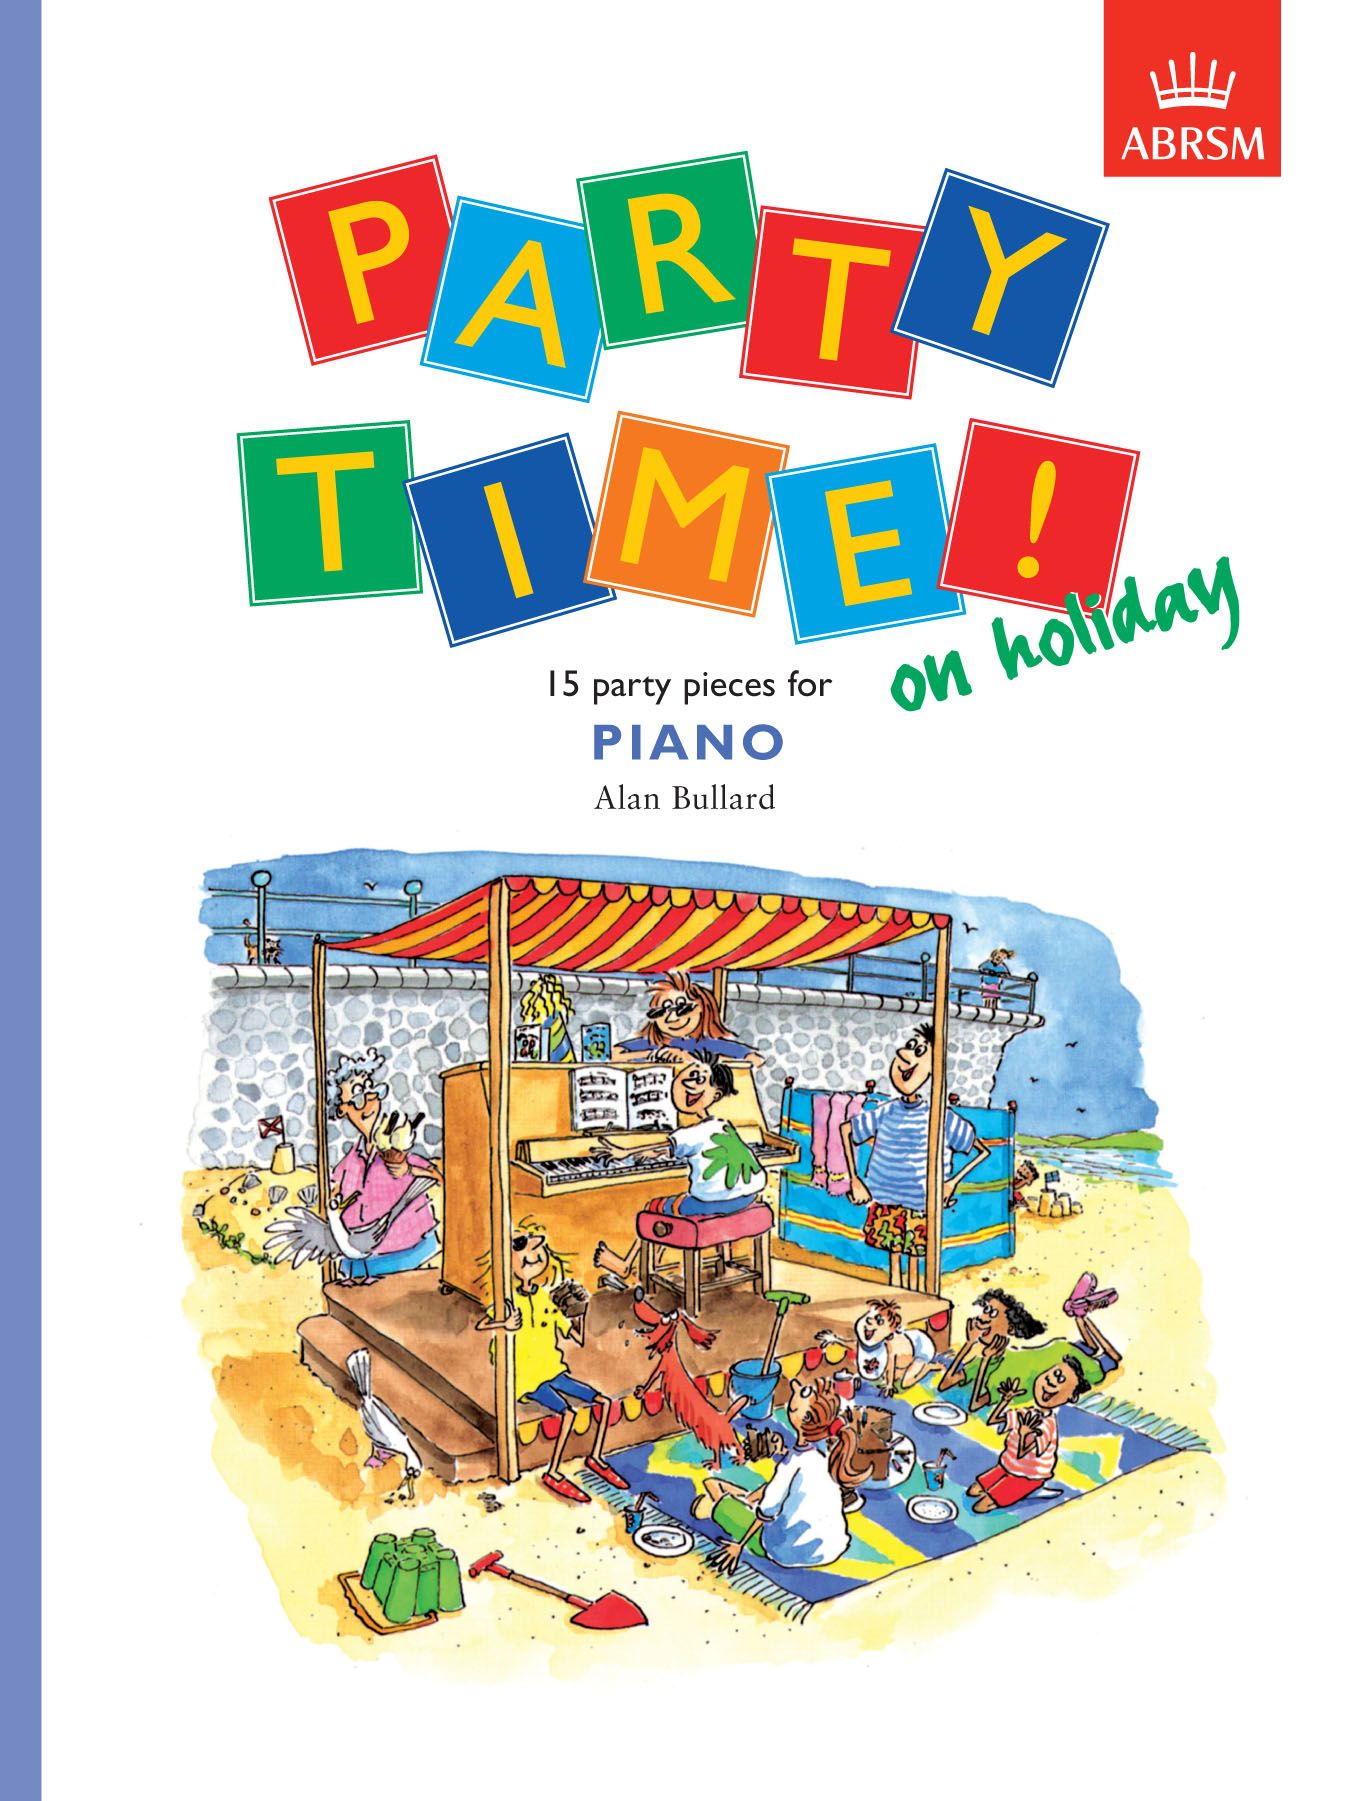 피아노: 휴일의 파티 타임!(Party Time! On holiday)